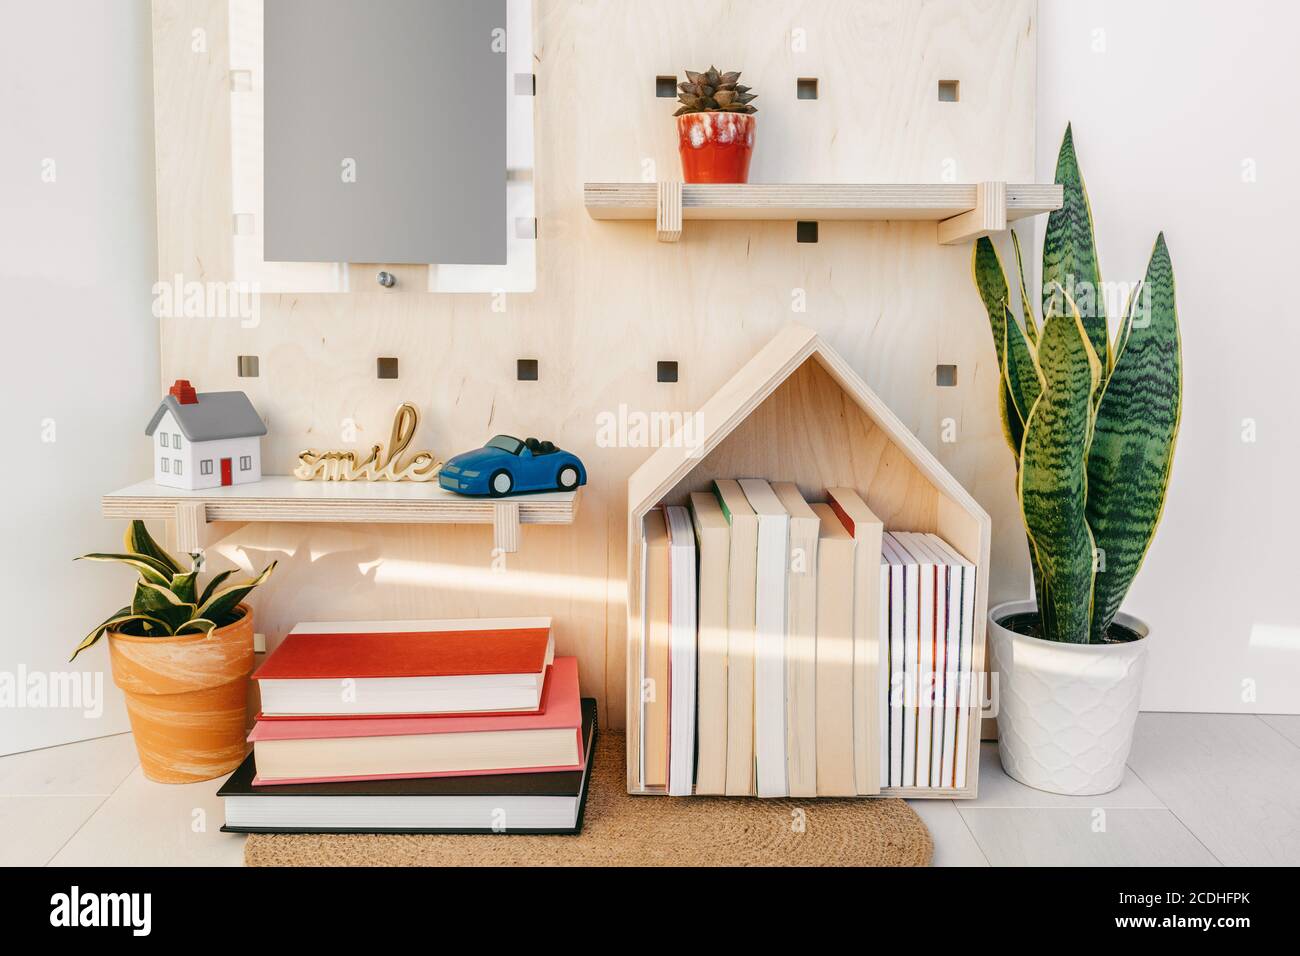 Arredamento domestico ripiani a parete accoglienti con libri e auto giocattolo. Nuovo concetto di decorazione della casa. Piante, mensola in legno, segno felice Foto Stock